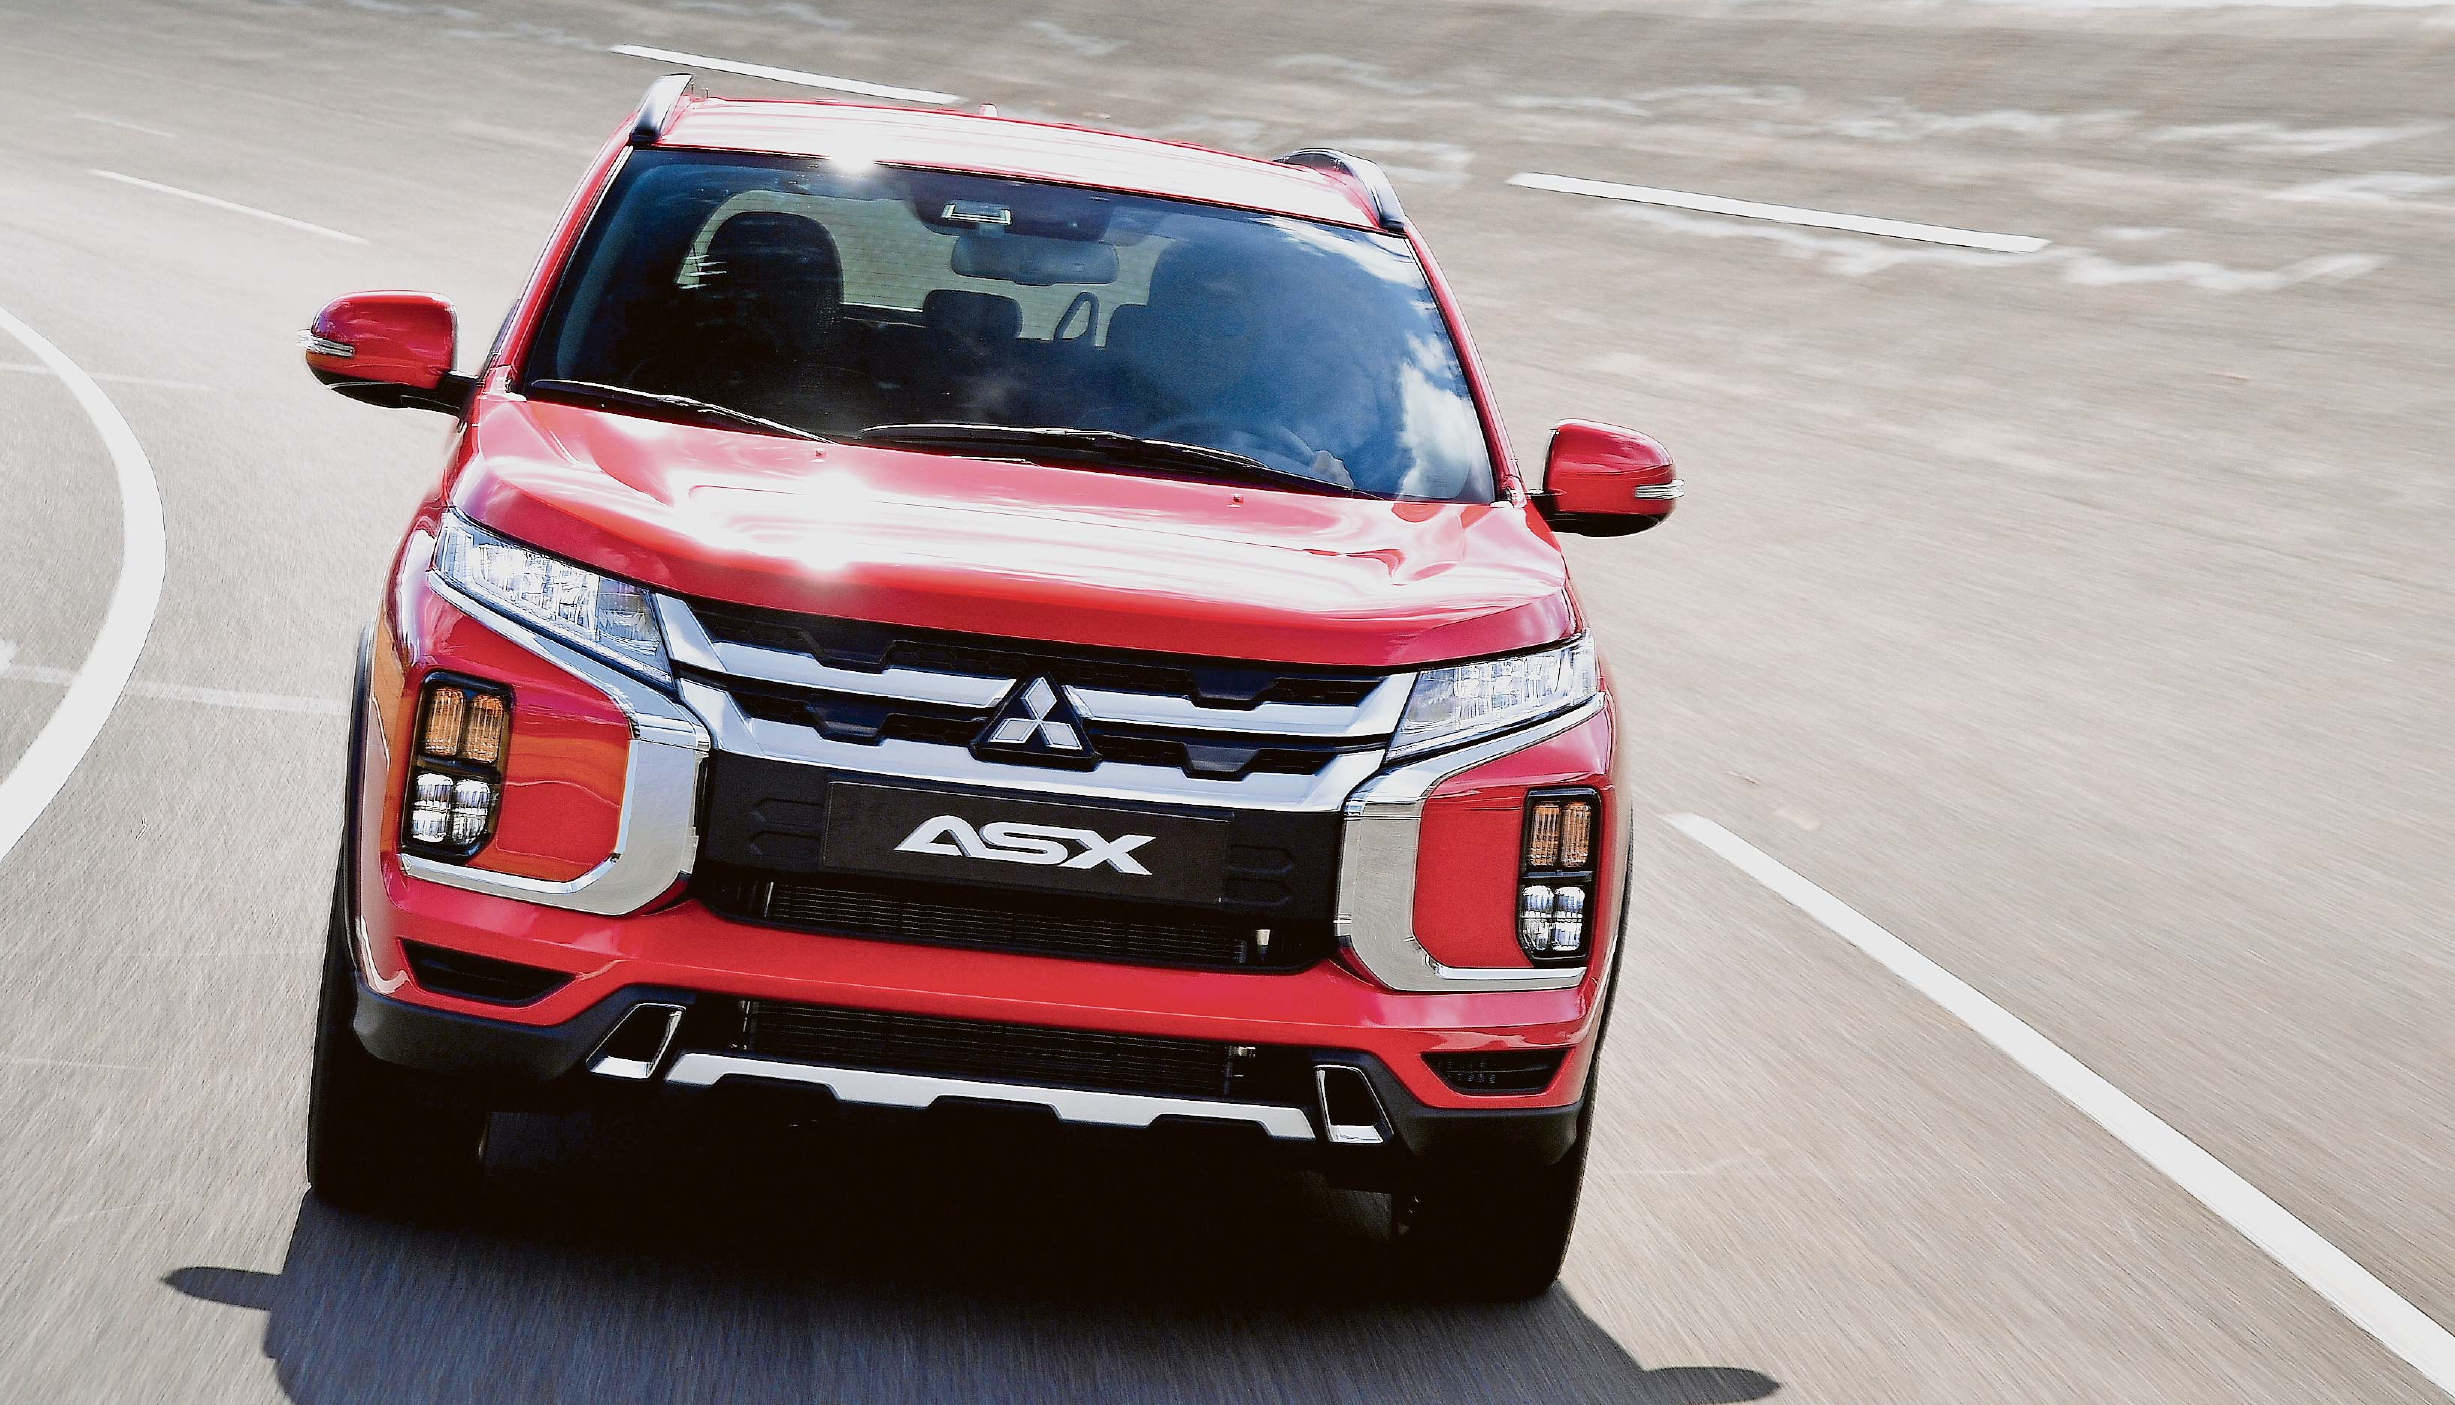 Wieder Mit Allrad Mehr Stabilitat Und Sicherheit Fur Mitsubishi Asx Auto Verkehr Trierischer Volksfreund